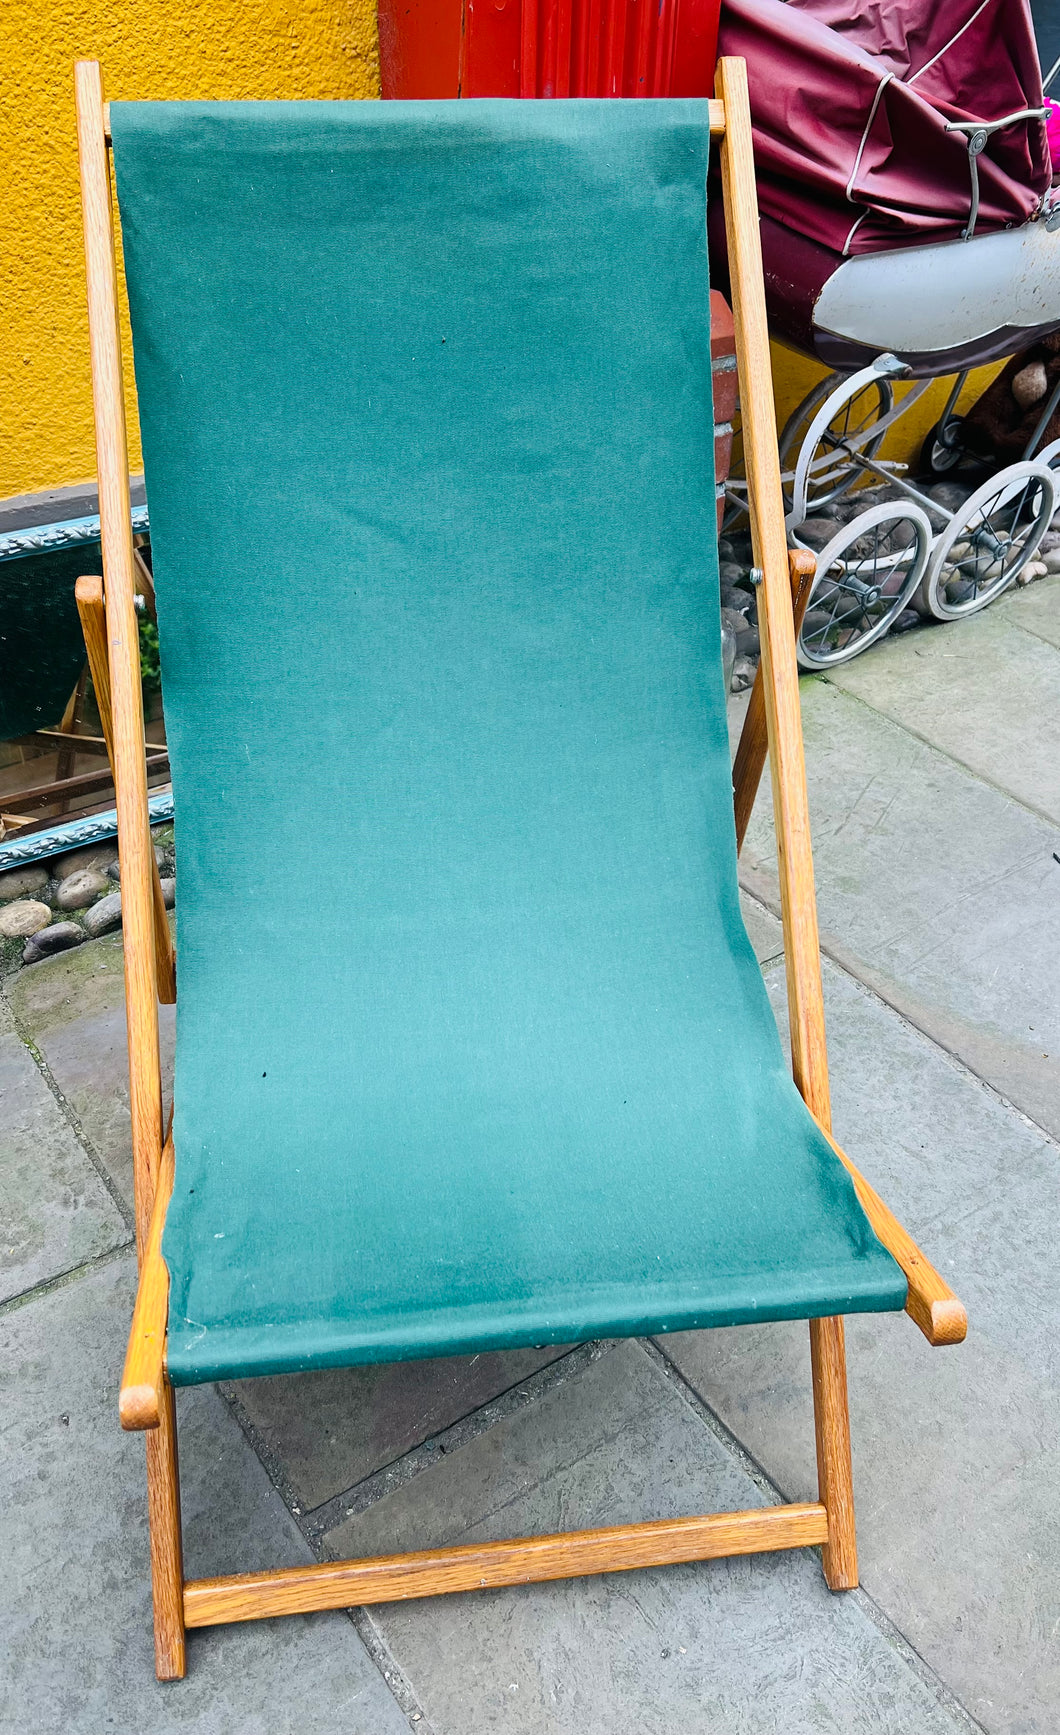 ‘Deckchair’ derw Vintage gyda defnydd gwyrdd/ Vintage green fabric oak deckchair